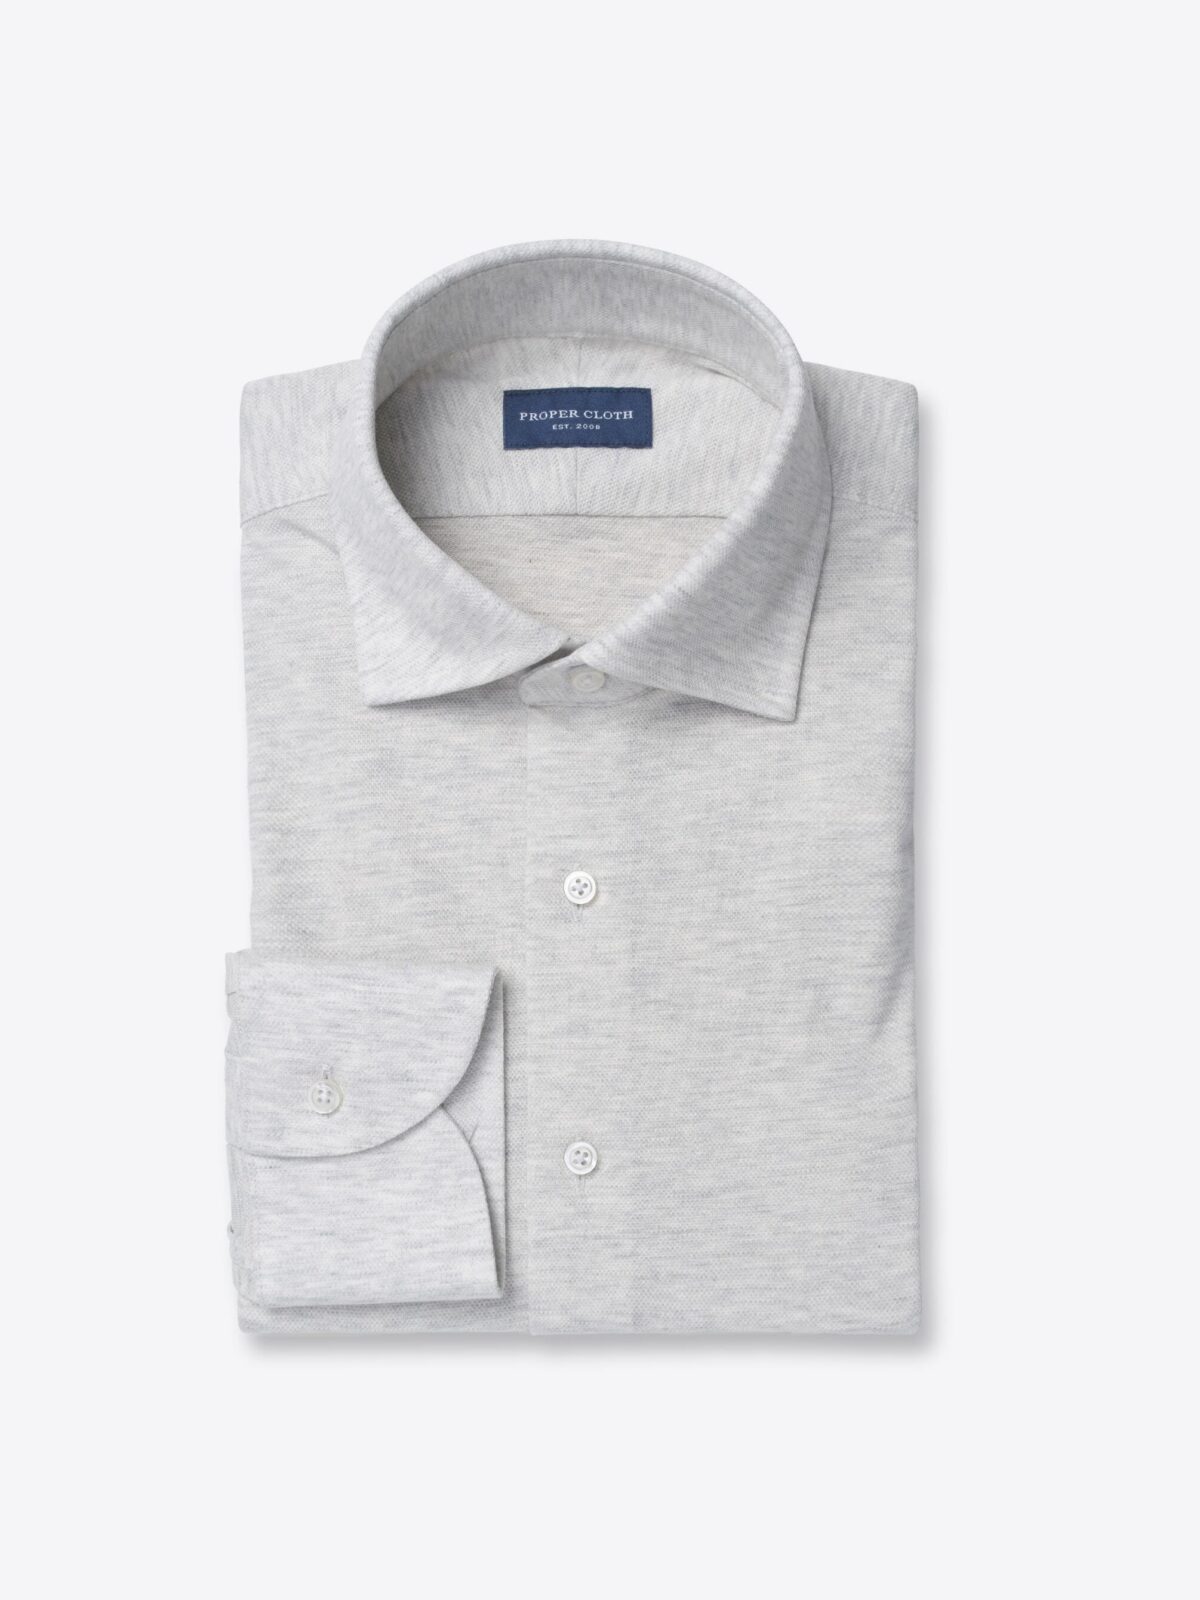 Carmel Pale Grey Melange Tencel and Cotton Knit Pique Shirt by Proper Cloth